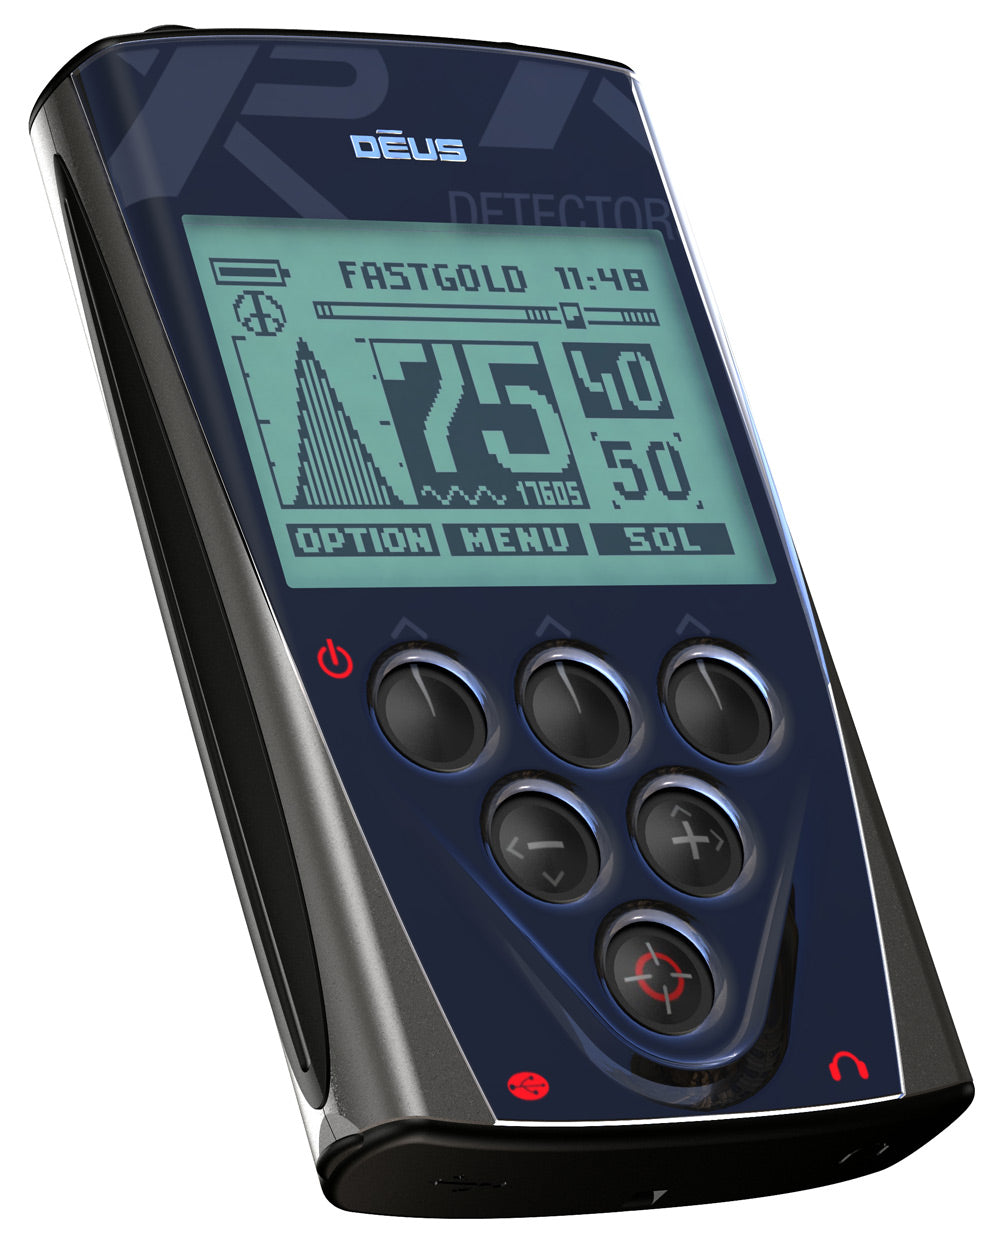 XP DEUS Wireless Metal Detector Shop Features Reviews – MetalDetector